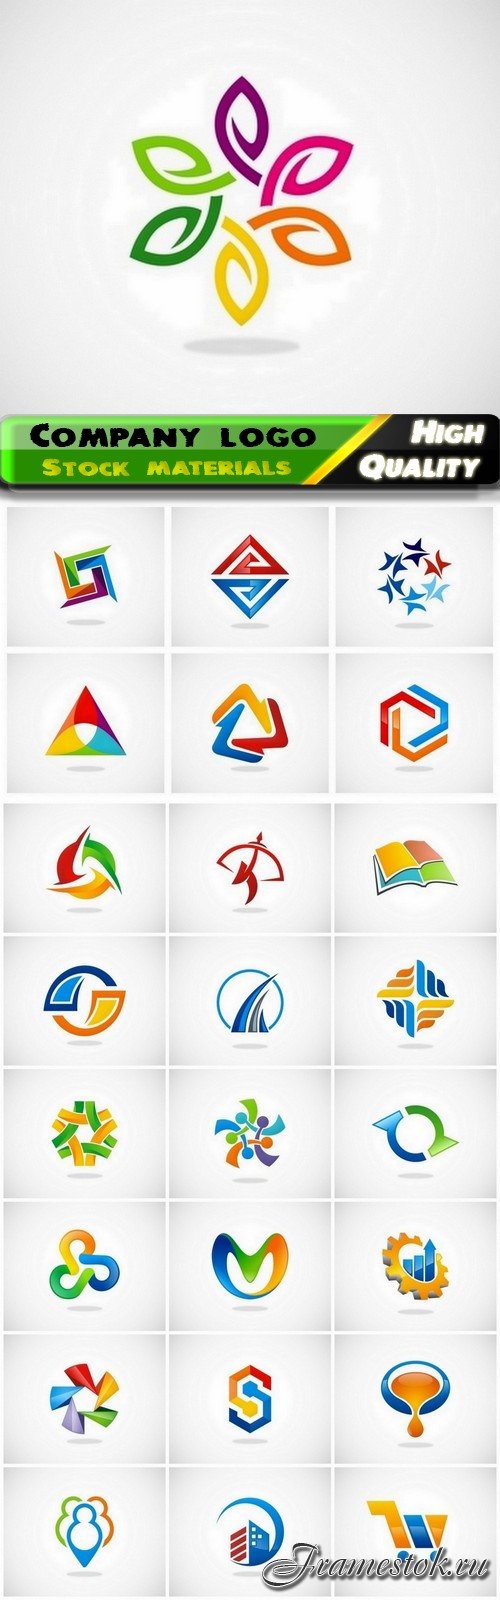 Business company badge logotype and logo emblem 22 - 25 Eps